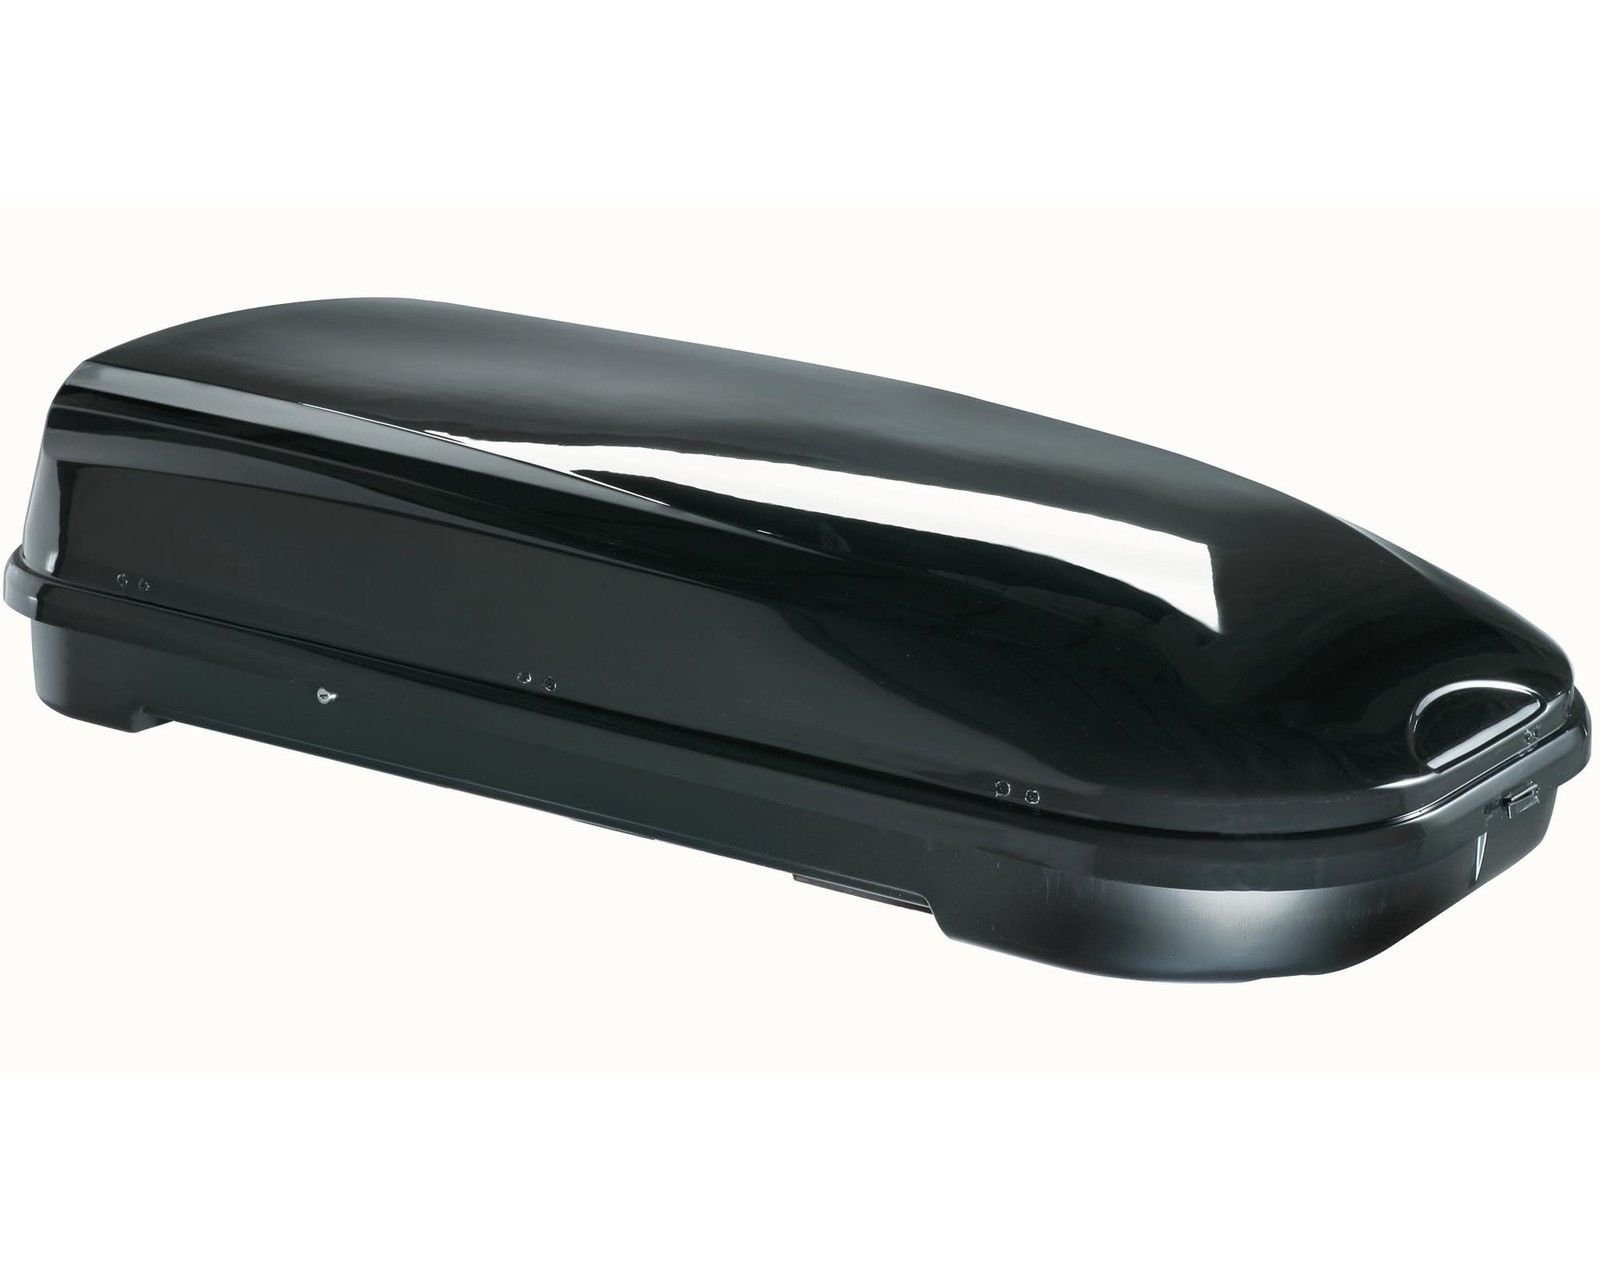 VDP Dachbox, (ALLES IN EINEM - Sparen Sie sich die Auswahl mehrerer Komponenten für Ihre perfekte Transportlösung - Mit dem Set aus Dachbox und Dachträger erhalten Sie ein leicht zu montierendes Komplettpaket mit allen Befestigungsteilen. Die glänzend-schwarze Box überzeugt mit ihrem edlen Design und viel Platz), Dachbox VDP-FL580 Relingträger Alu kompatibel mit BMW X5 E70 06-10 abschließbar